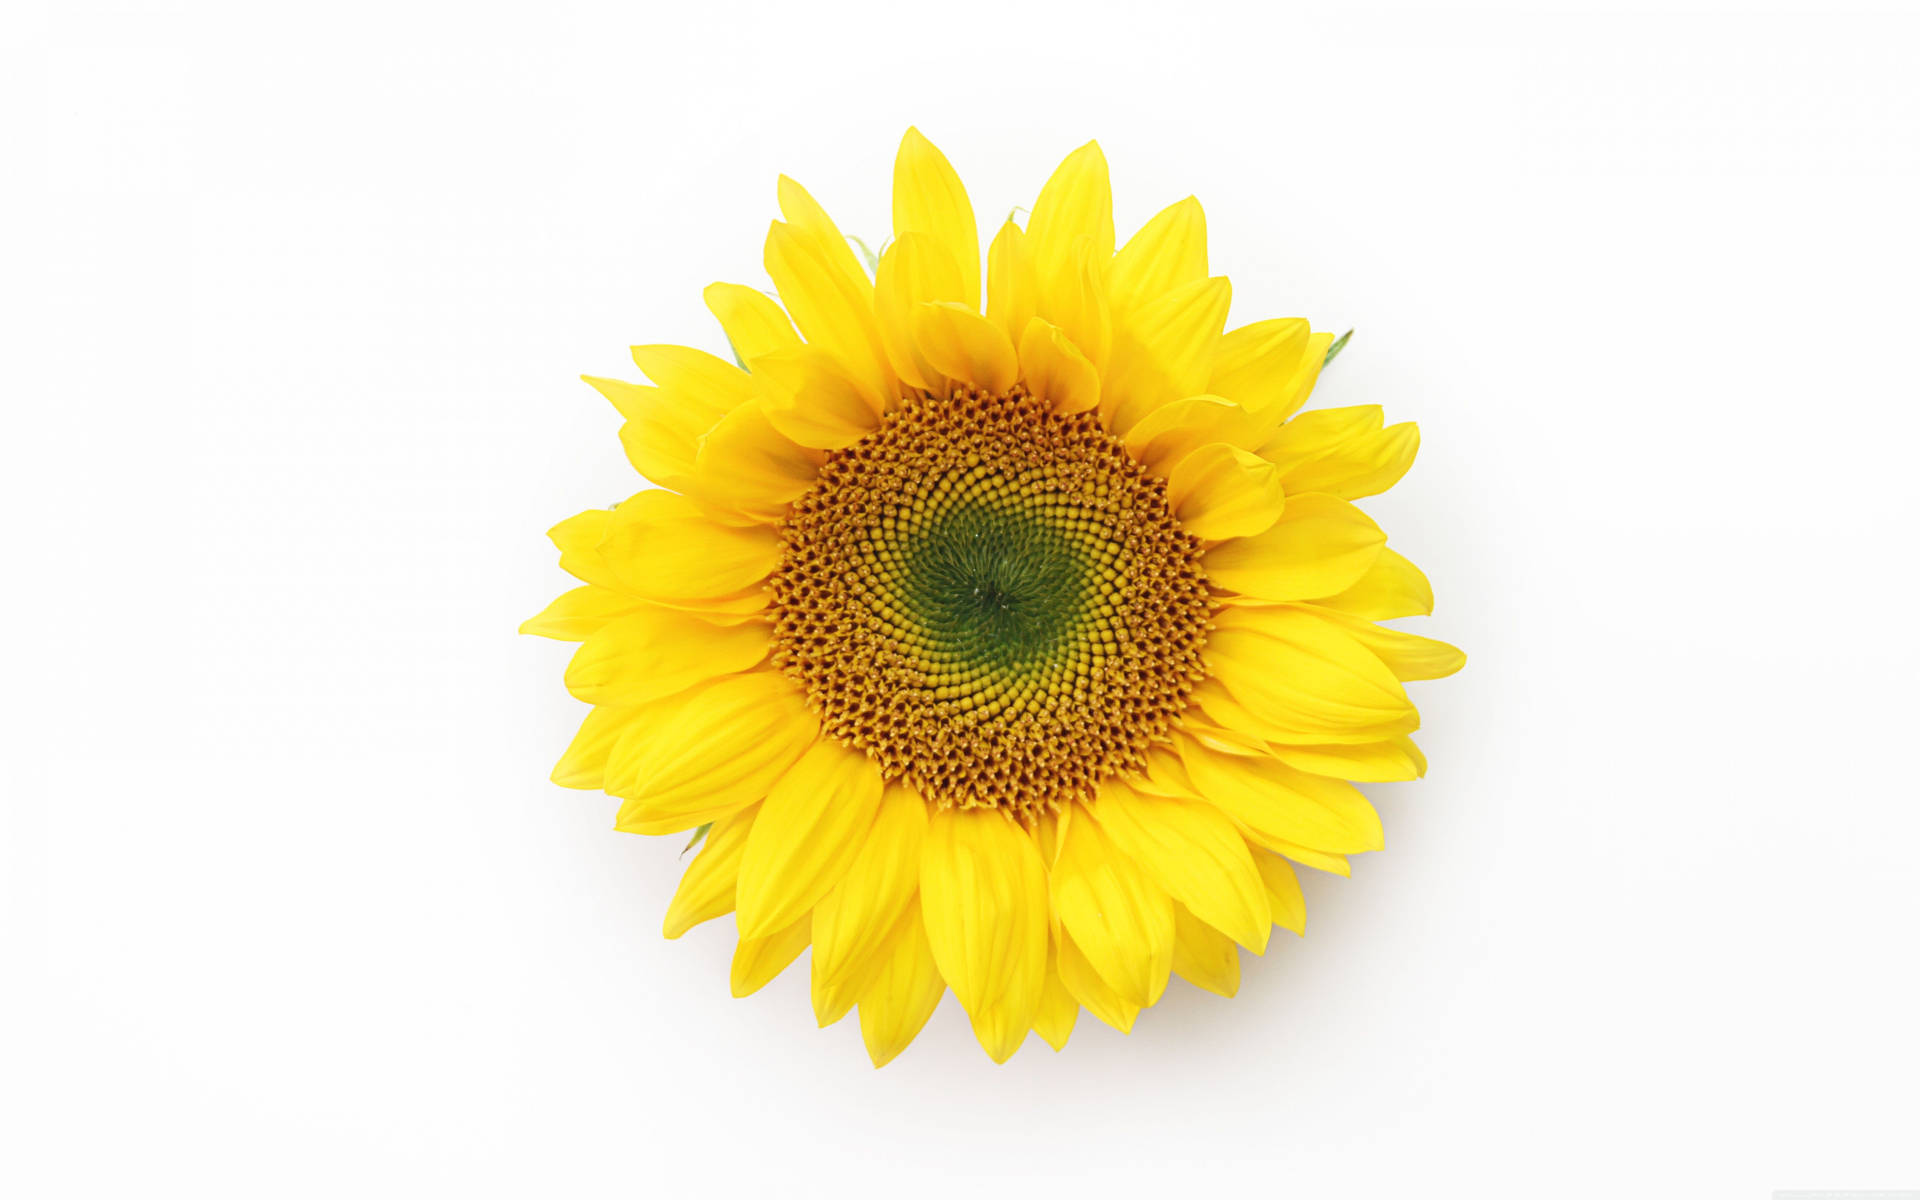 “A sunflower in full bloom radiates sunshine.” Wallpaper